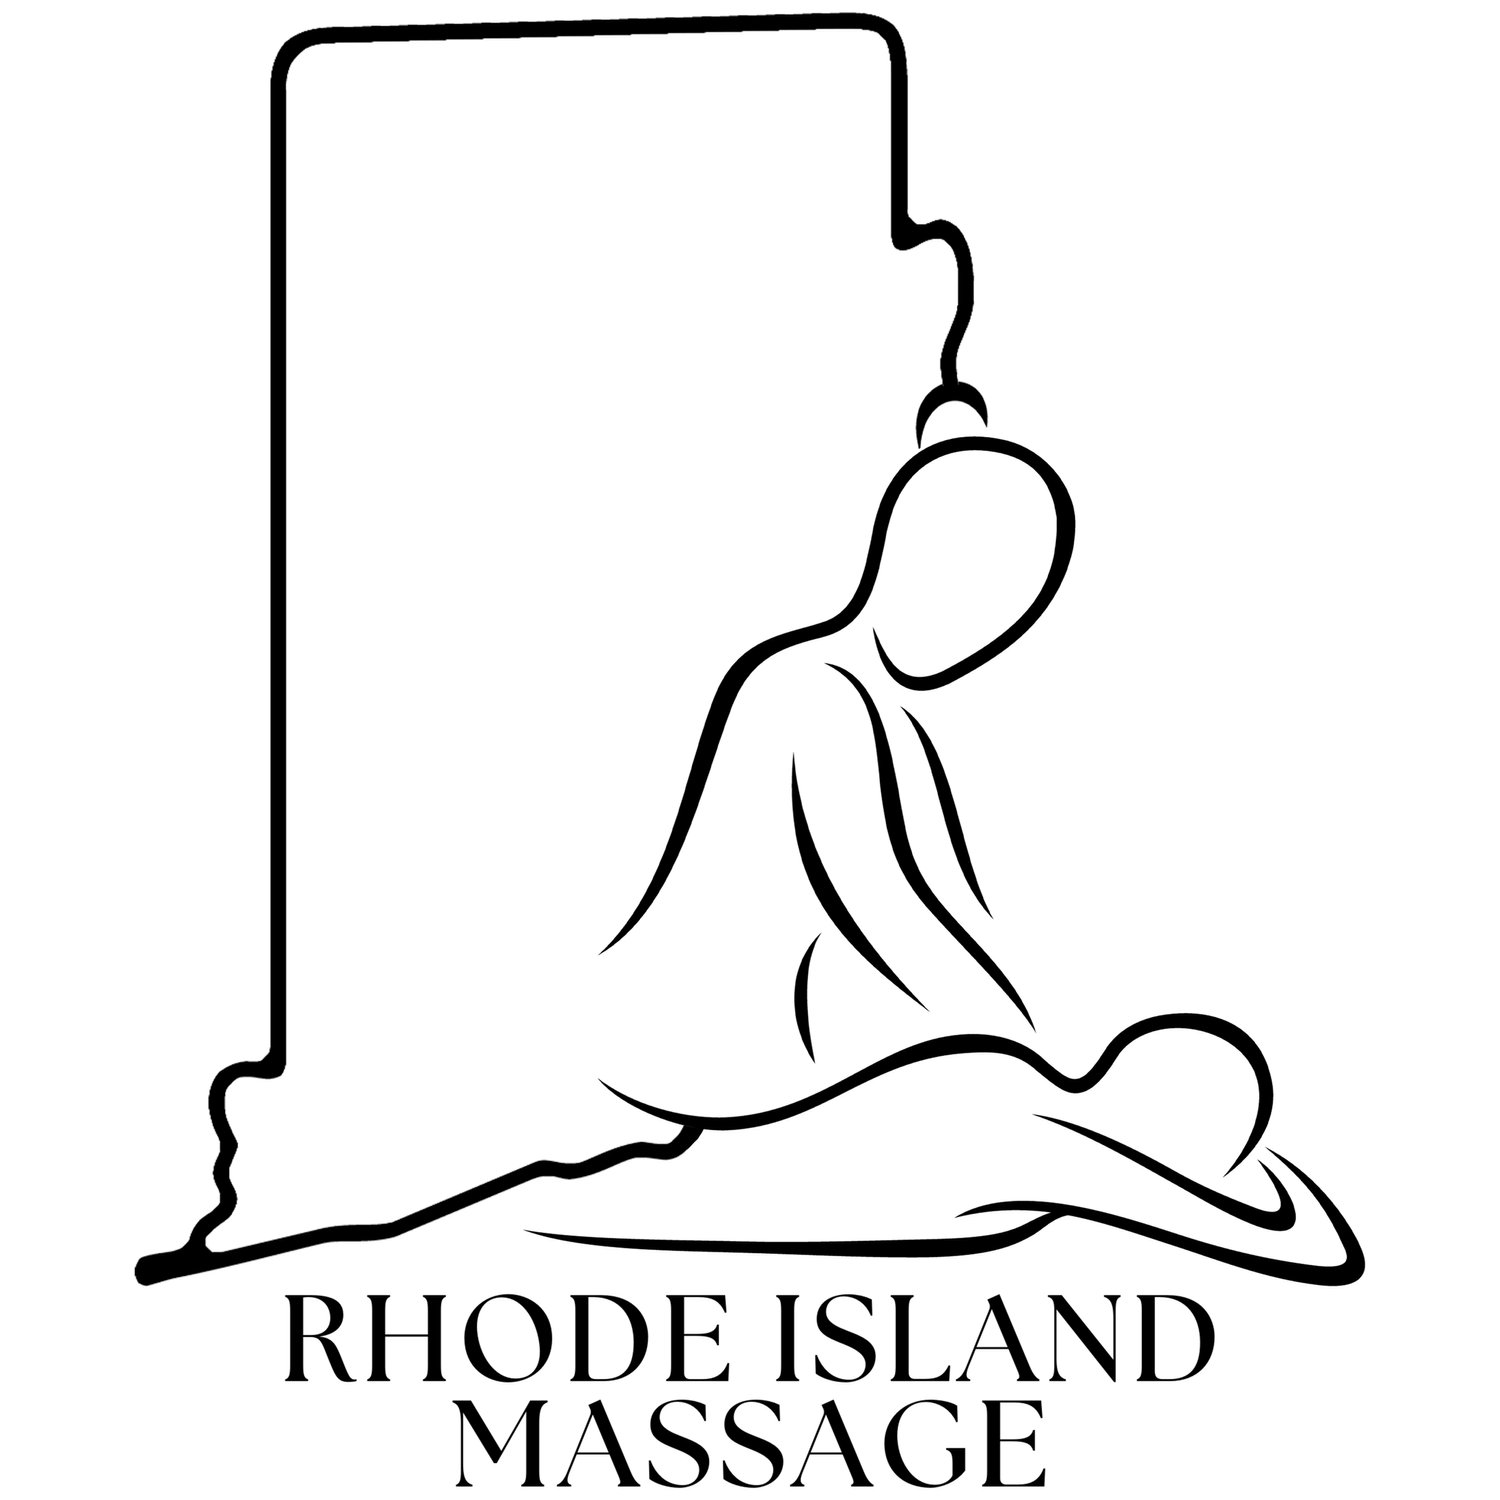 RHODE ISLAND MASSAGE